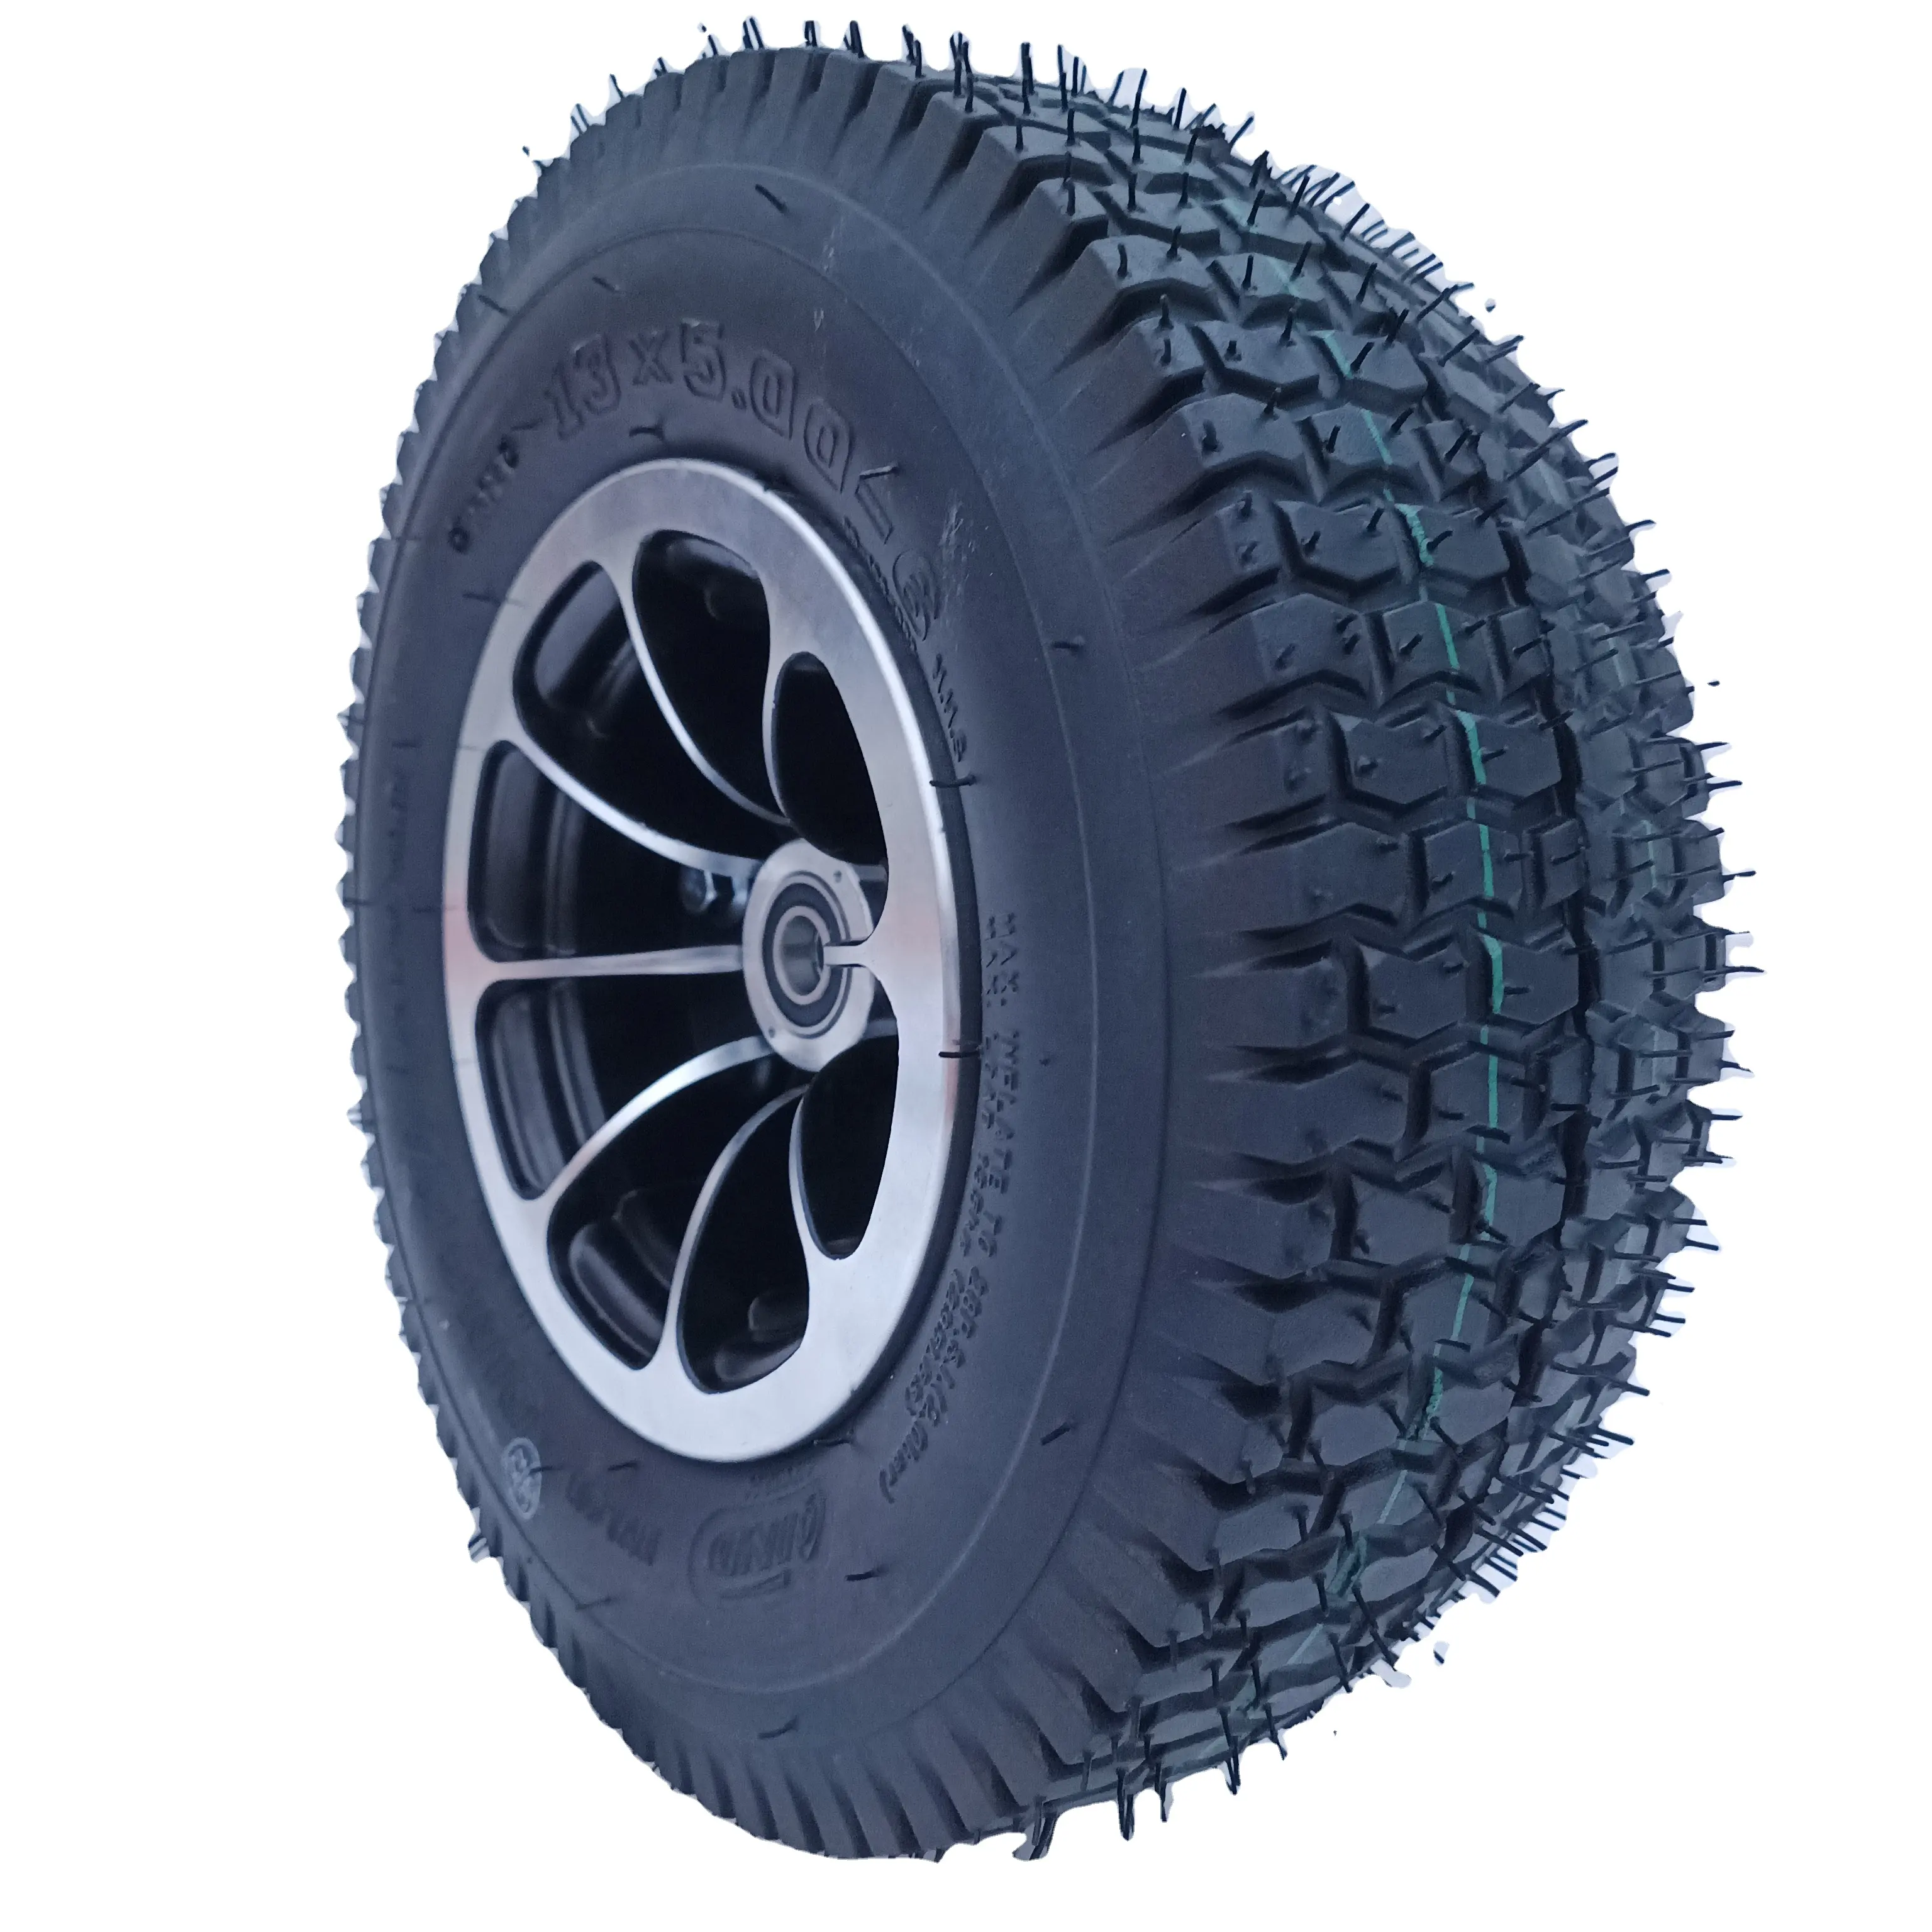 Neumático de 13x5,00-6 con llanta de asiento de rodamiento de aleación de aluminio para Scooter Eléctrico pequeño ATV/GO KARTS/cortacésped/camión quitanieves